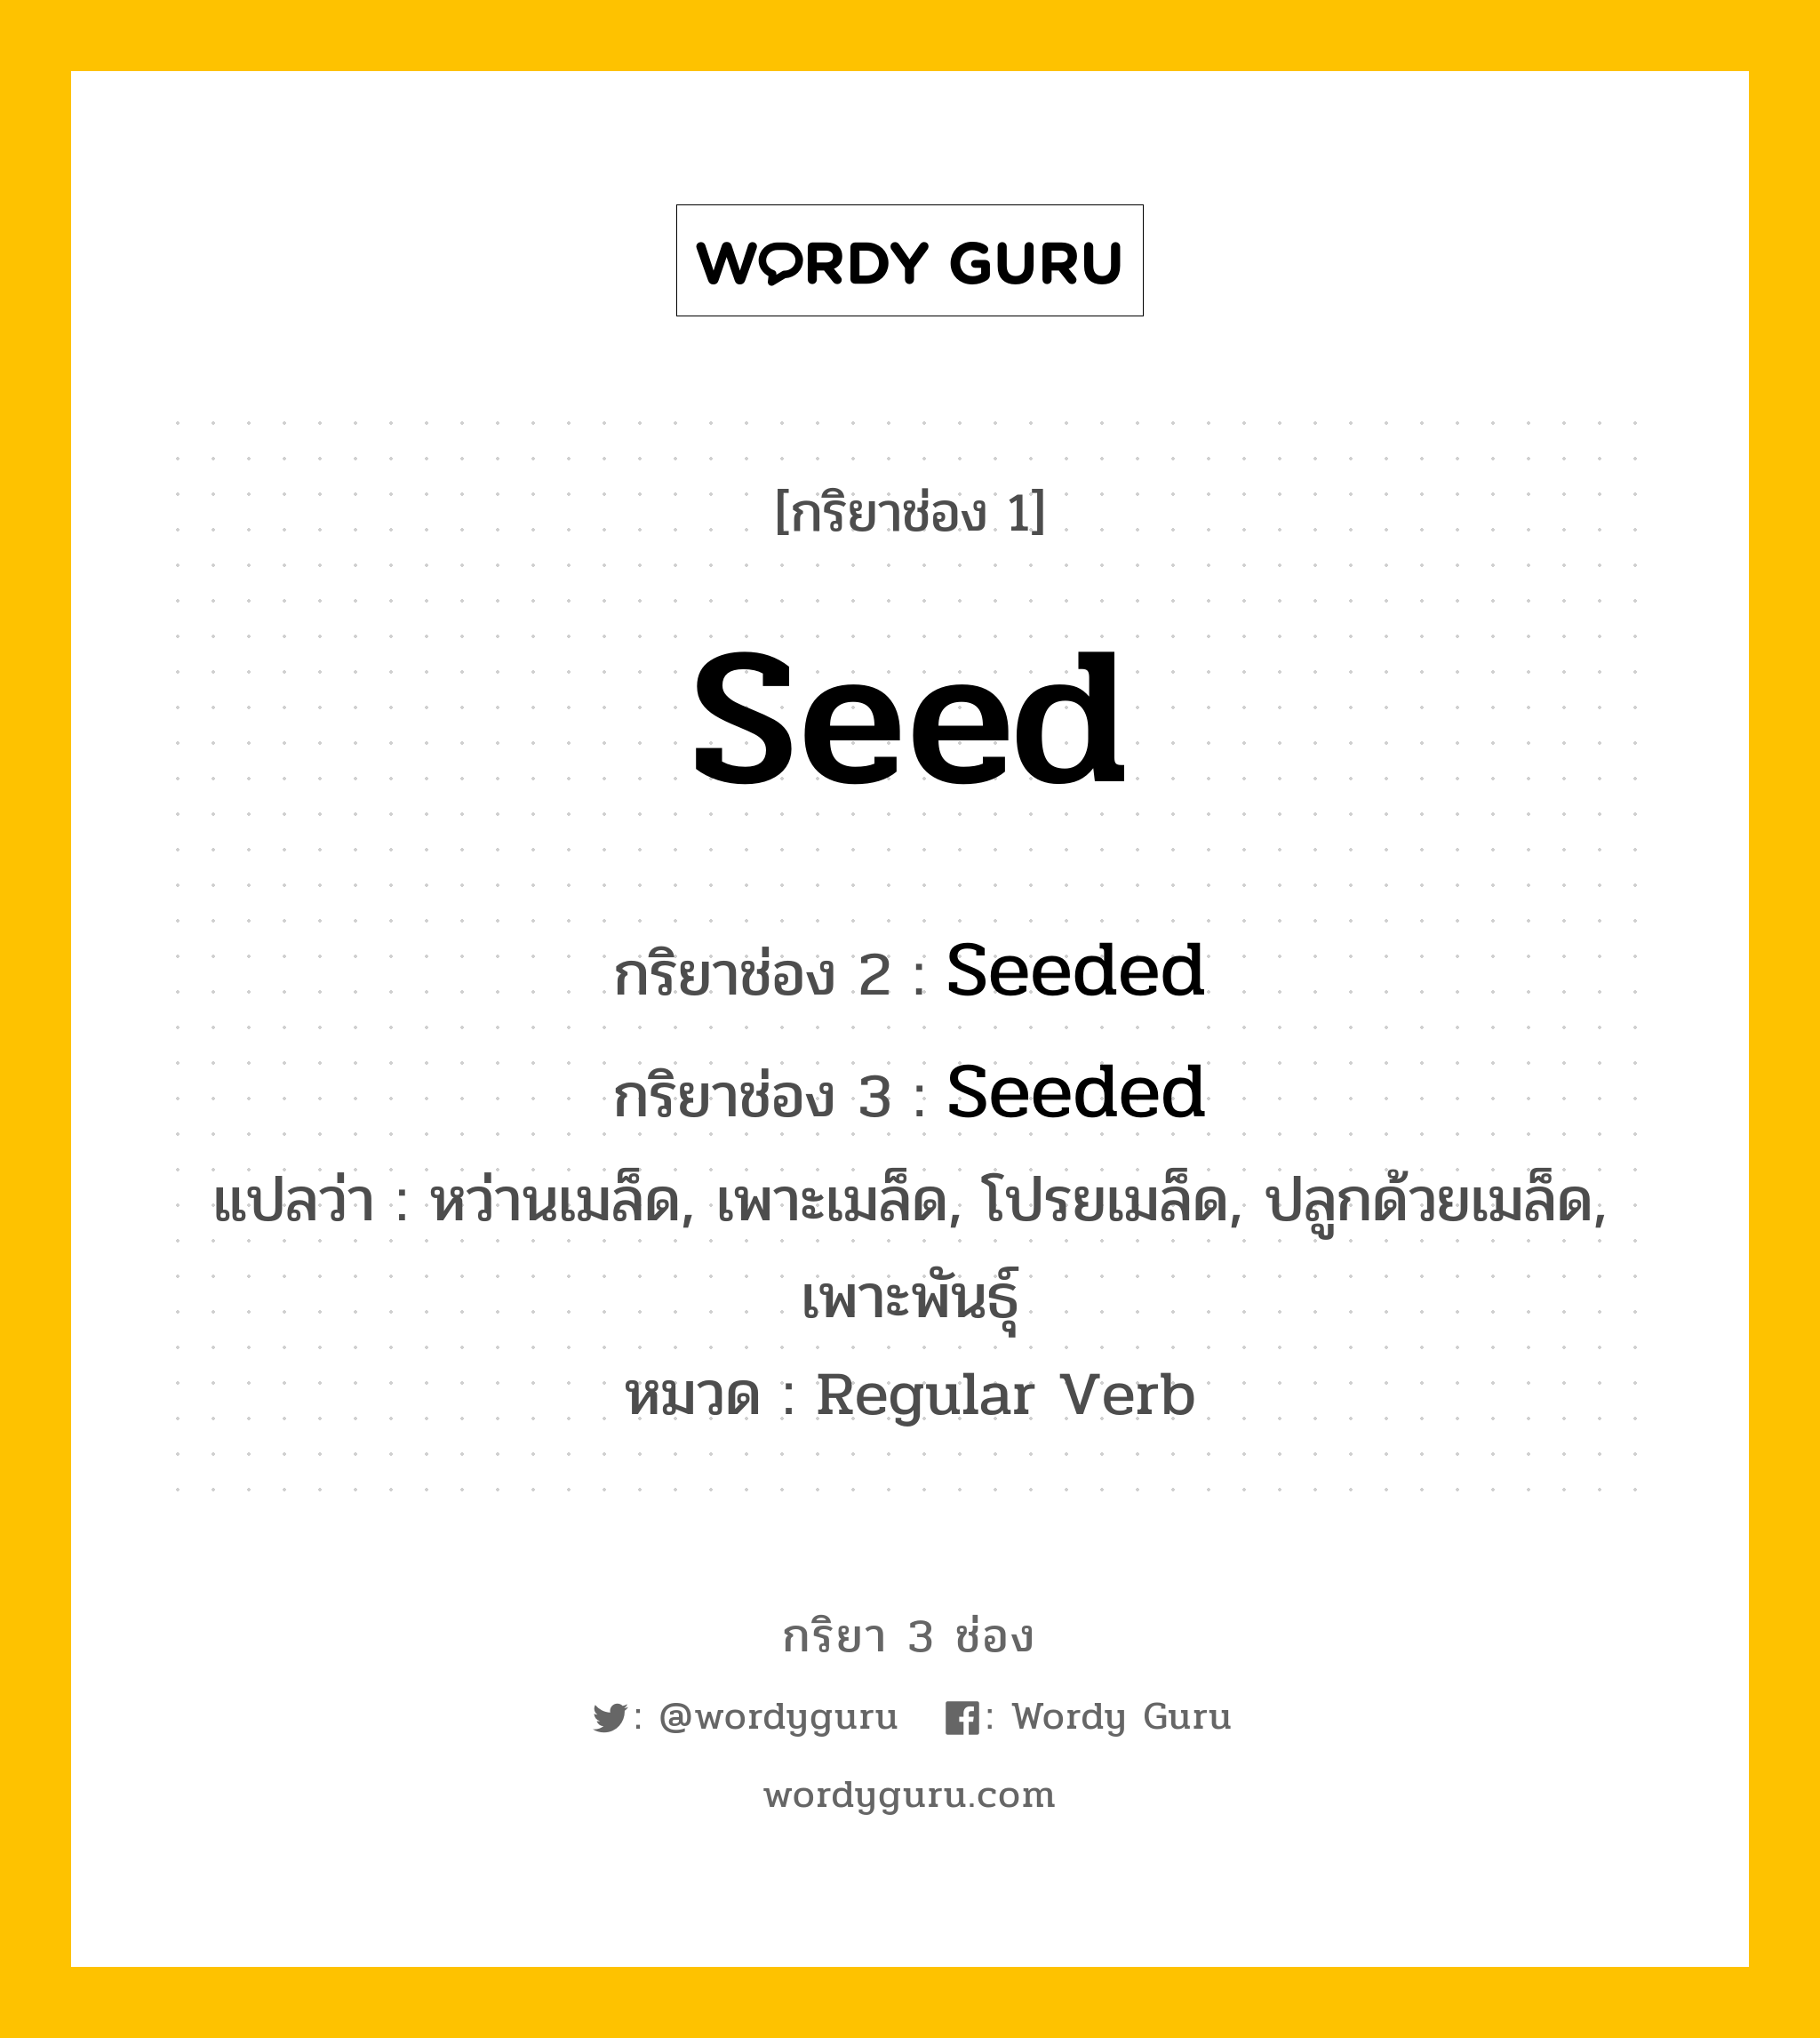 กริยา 3 ช่อง: Seed ช่อง 2 Seed ช่อง 3 คืออะไร, กริยาช่อง 1 Seed กริยาช่อง 2 Seeded กริยาช่อง 3 Seeded แปลว่า หว่านเมล็ด, เพาะเมล็ด, โปรยเมล็ด, ปลูกด้วยเมล็ด, เพาะพันธุ์ หมวด Regular Verb หมวด Regular Verb